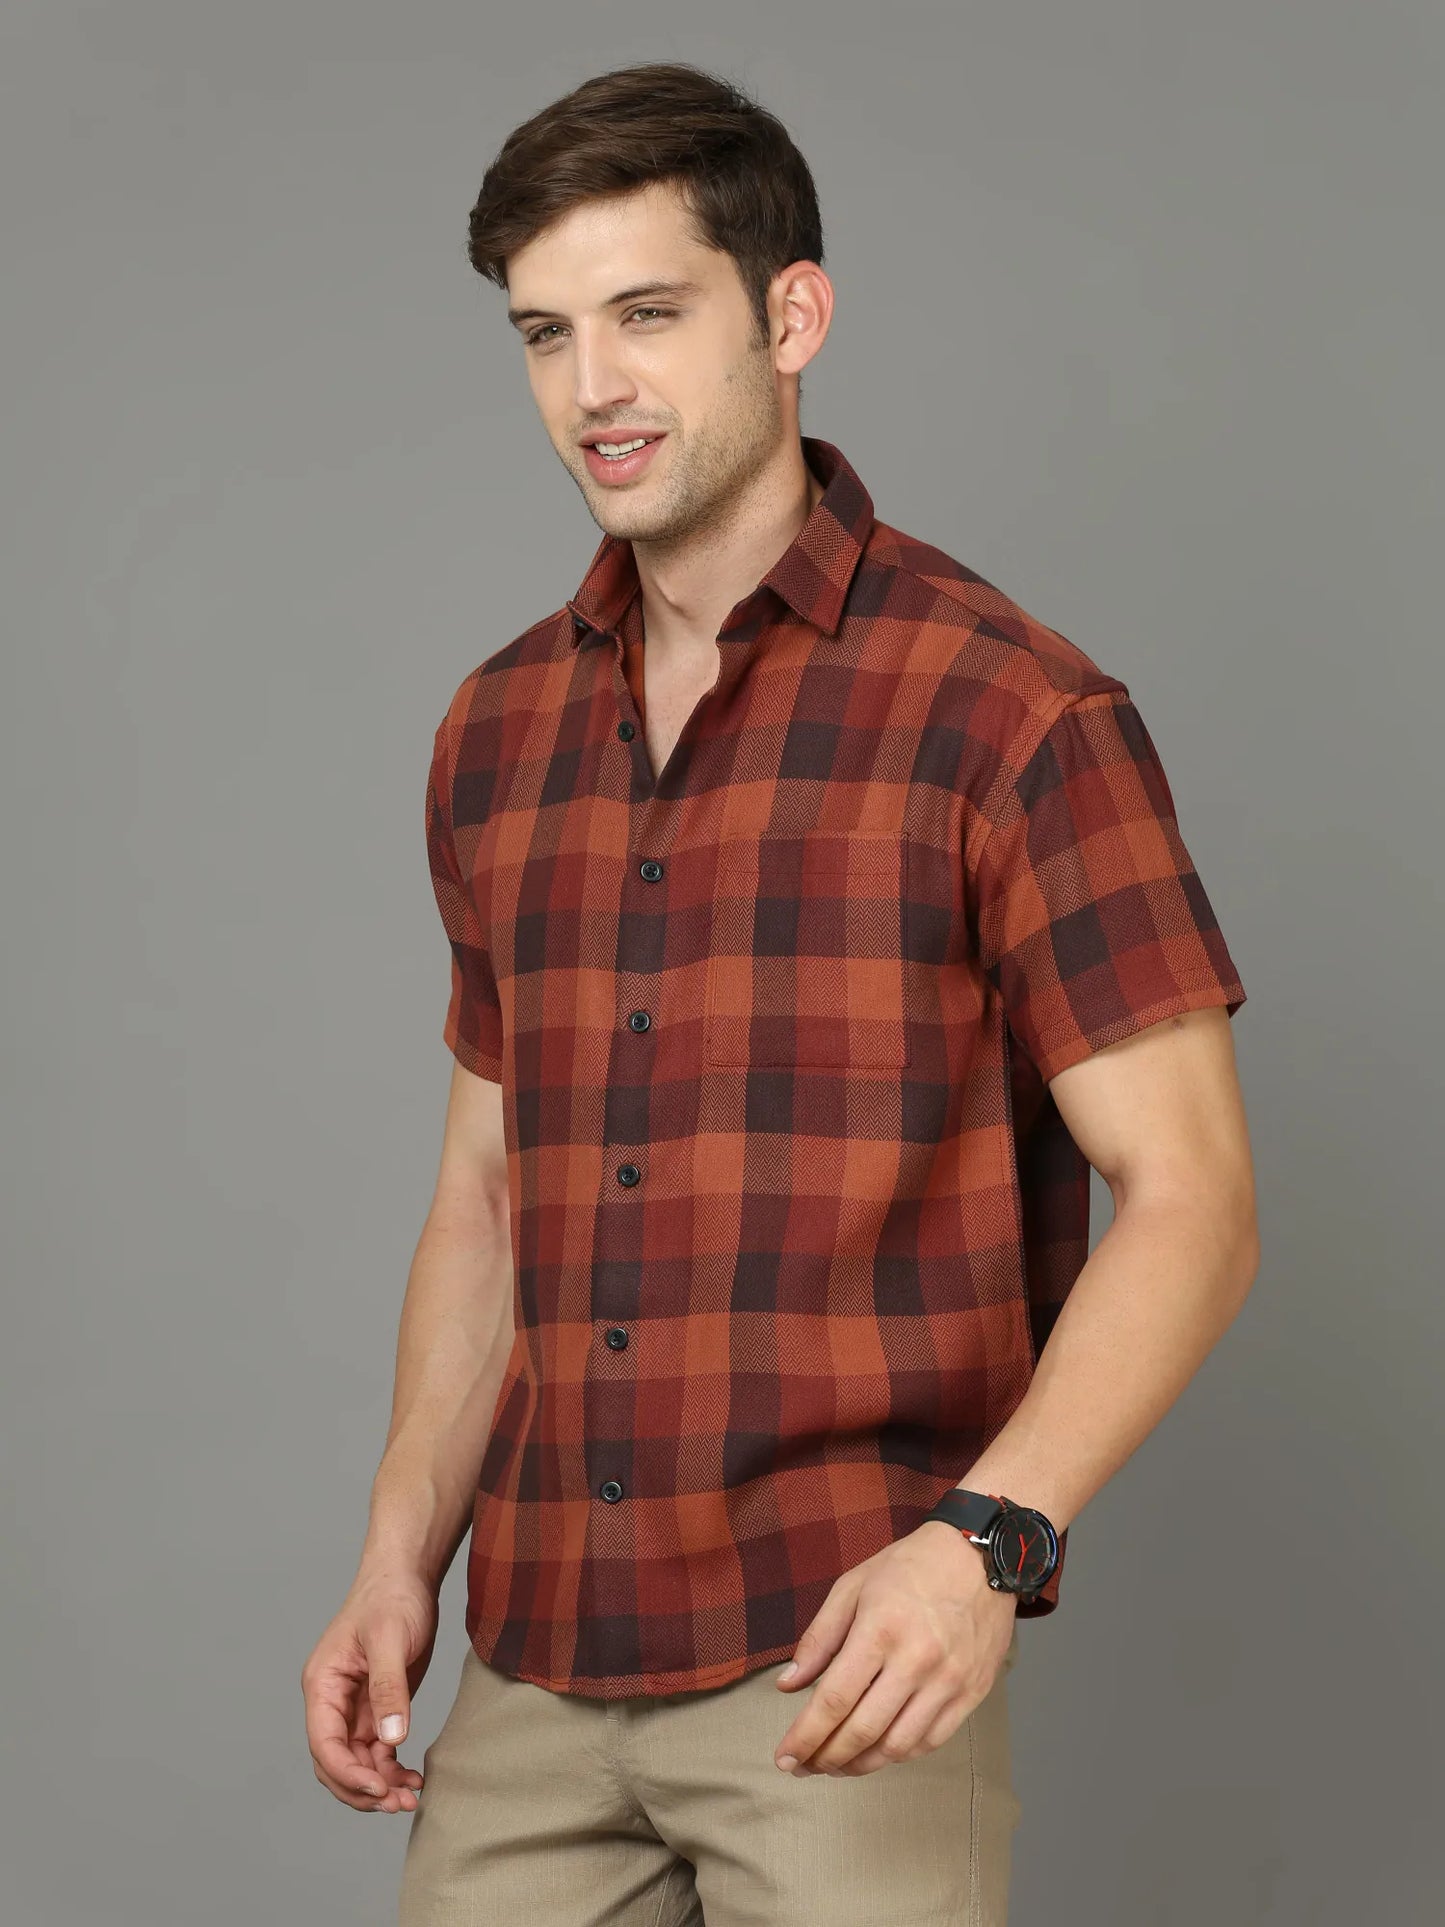 Elegant Checkered Shirt for Men 